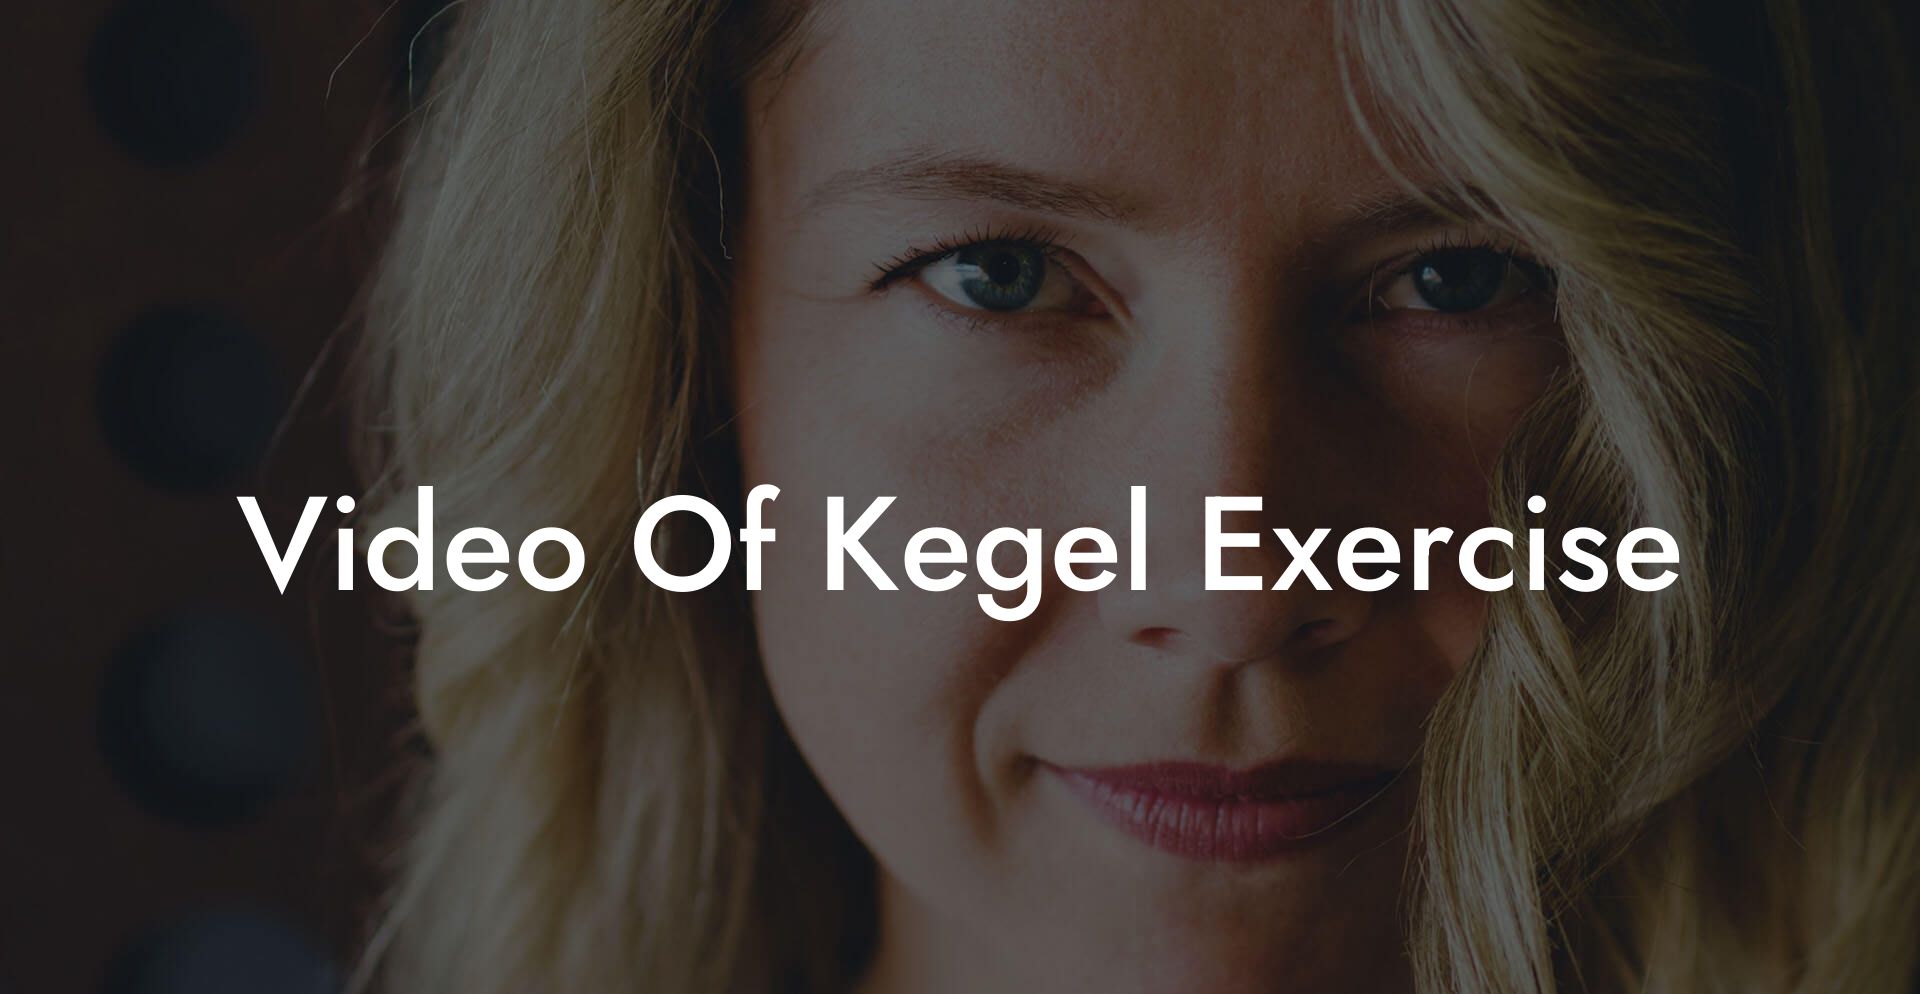 Video Of Kegel Exercise